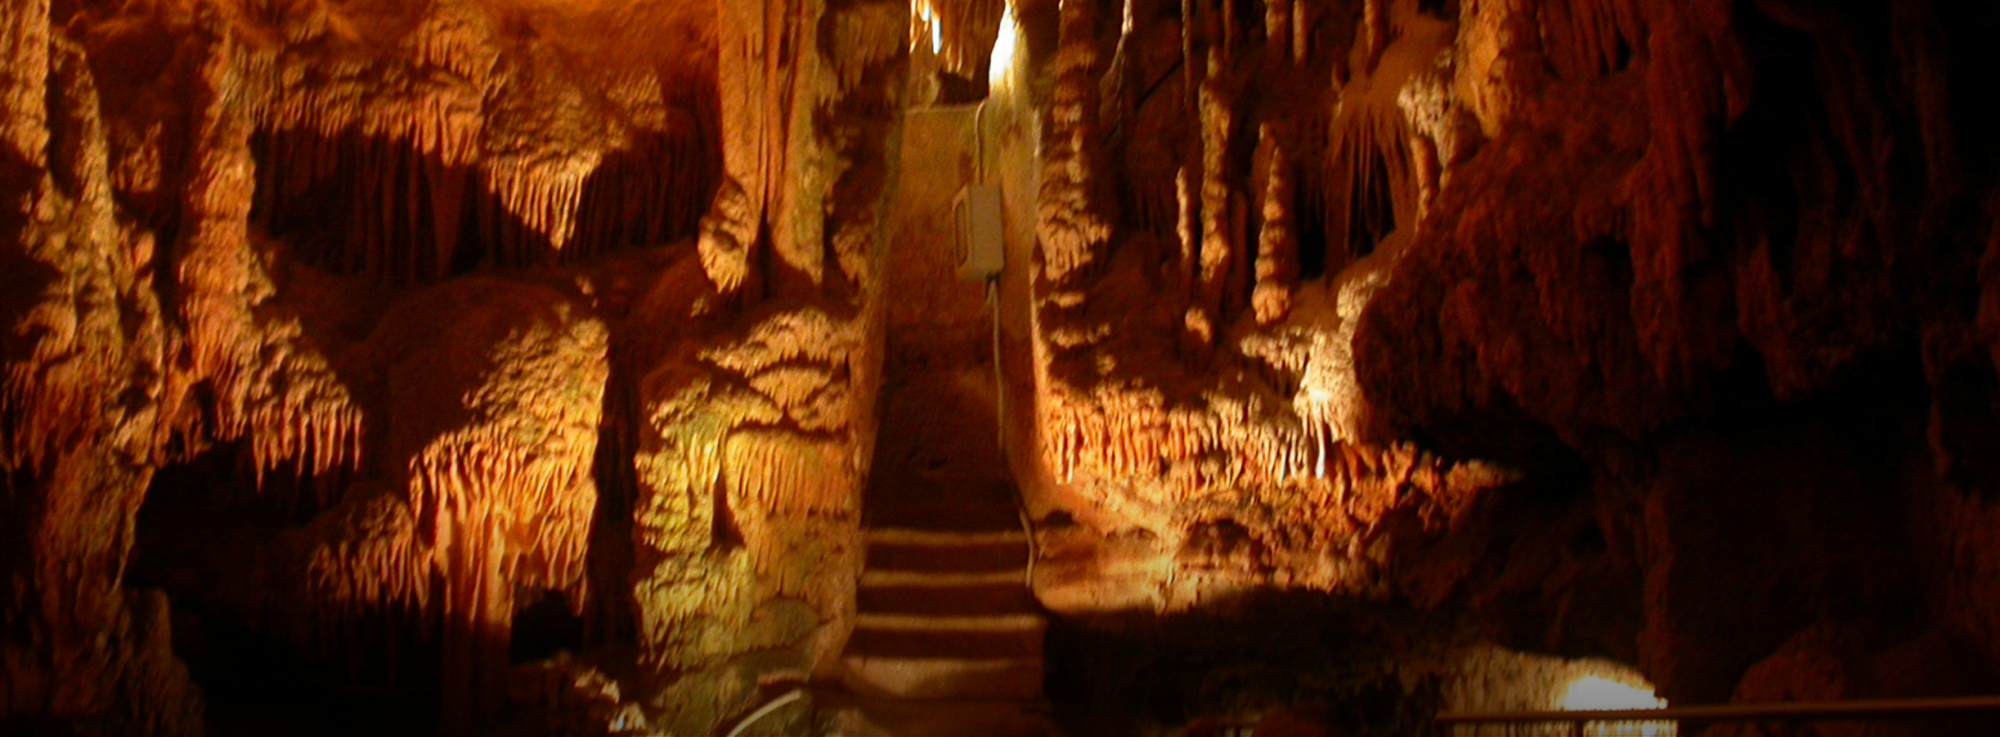 Castellana Grotte: Grotte D'Estate